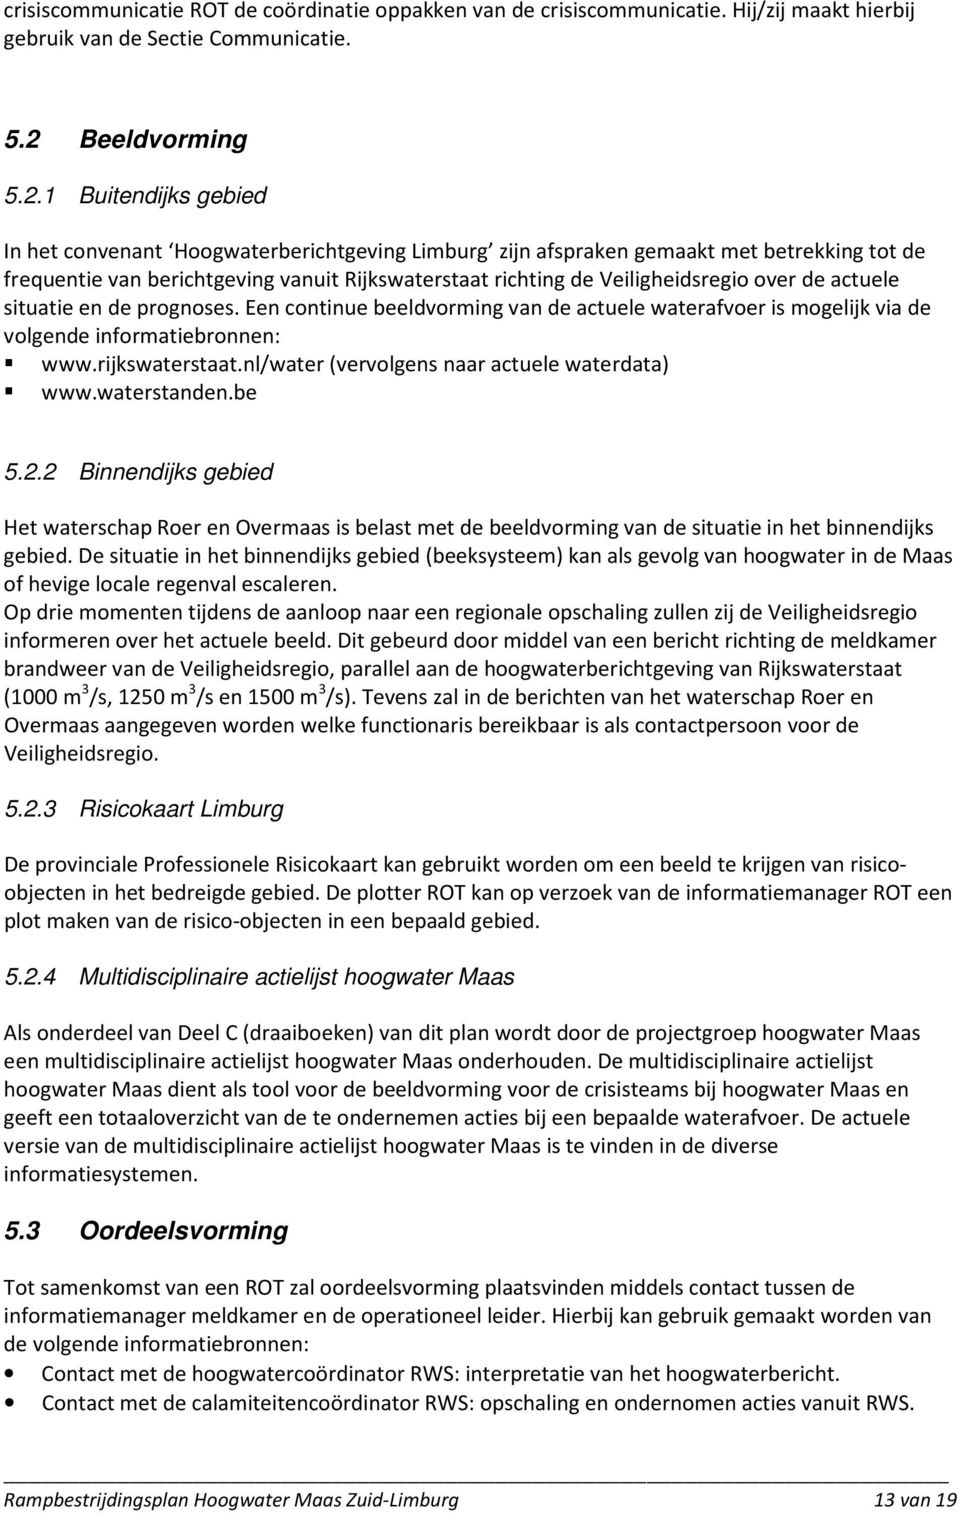 1 Buitendijks gebied In het convenant Hoogwaterberichtgeving Limburg zijn afspraken gemaakt met betrekking tot de frequentie van berichtgeving vanuit Rijkswaterstaat richting de Veiligheidsregio over